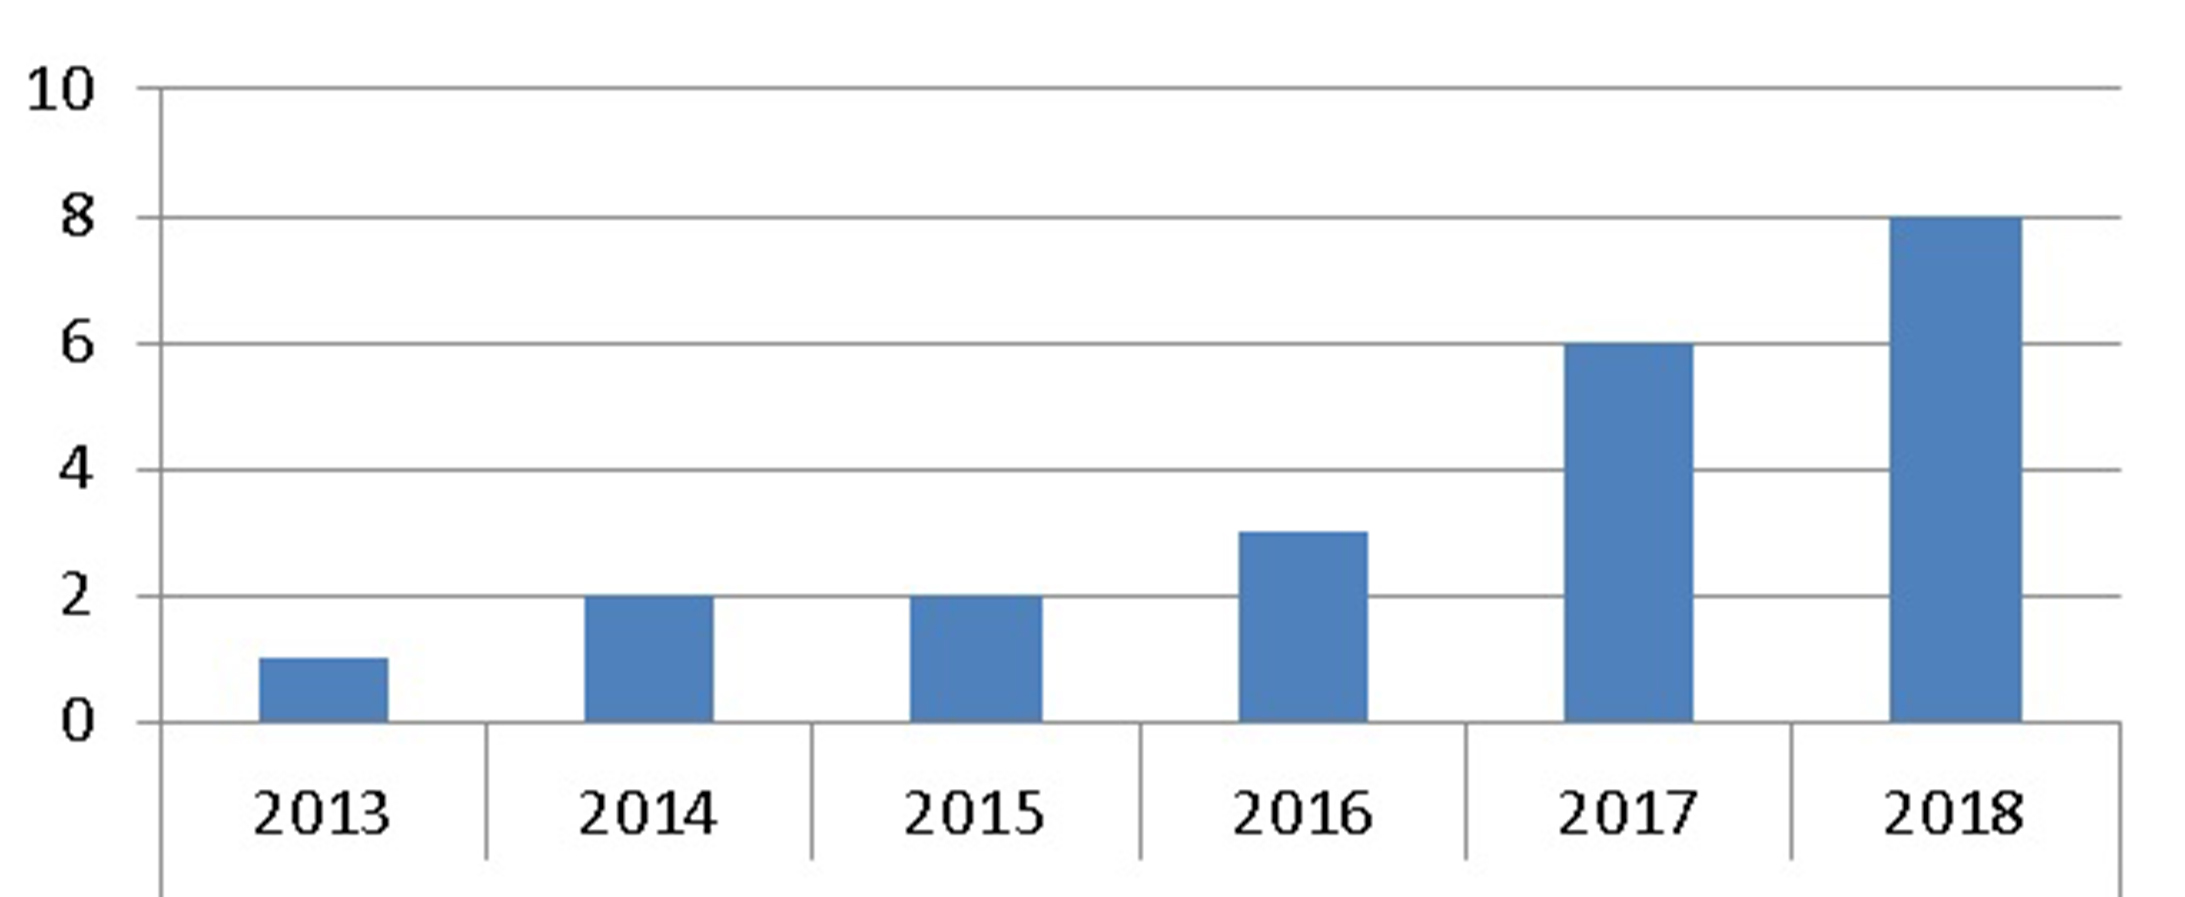 Distribuição temporal e numérica no interstício 2013 a 2018 das pesquisas analisadas